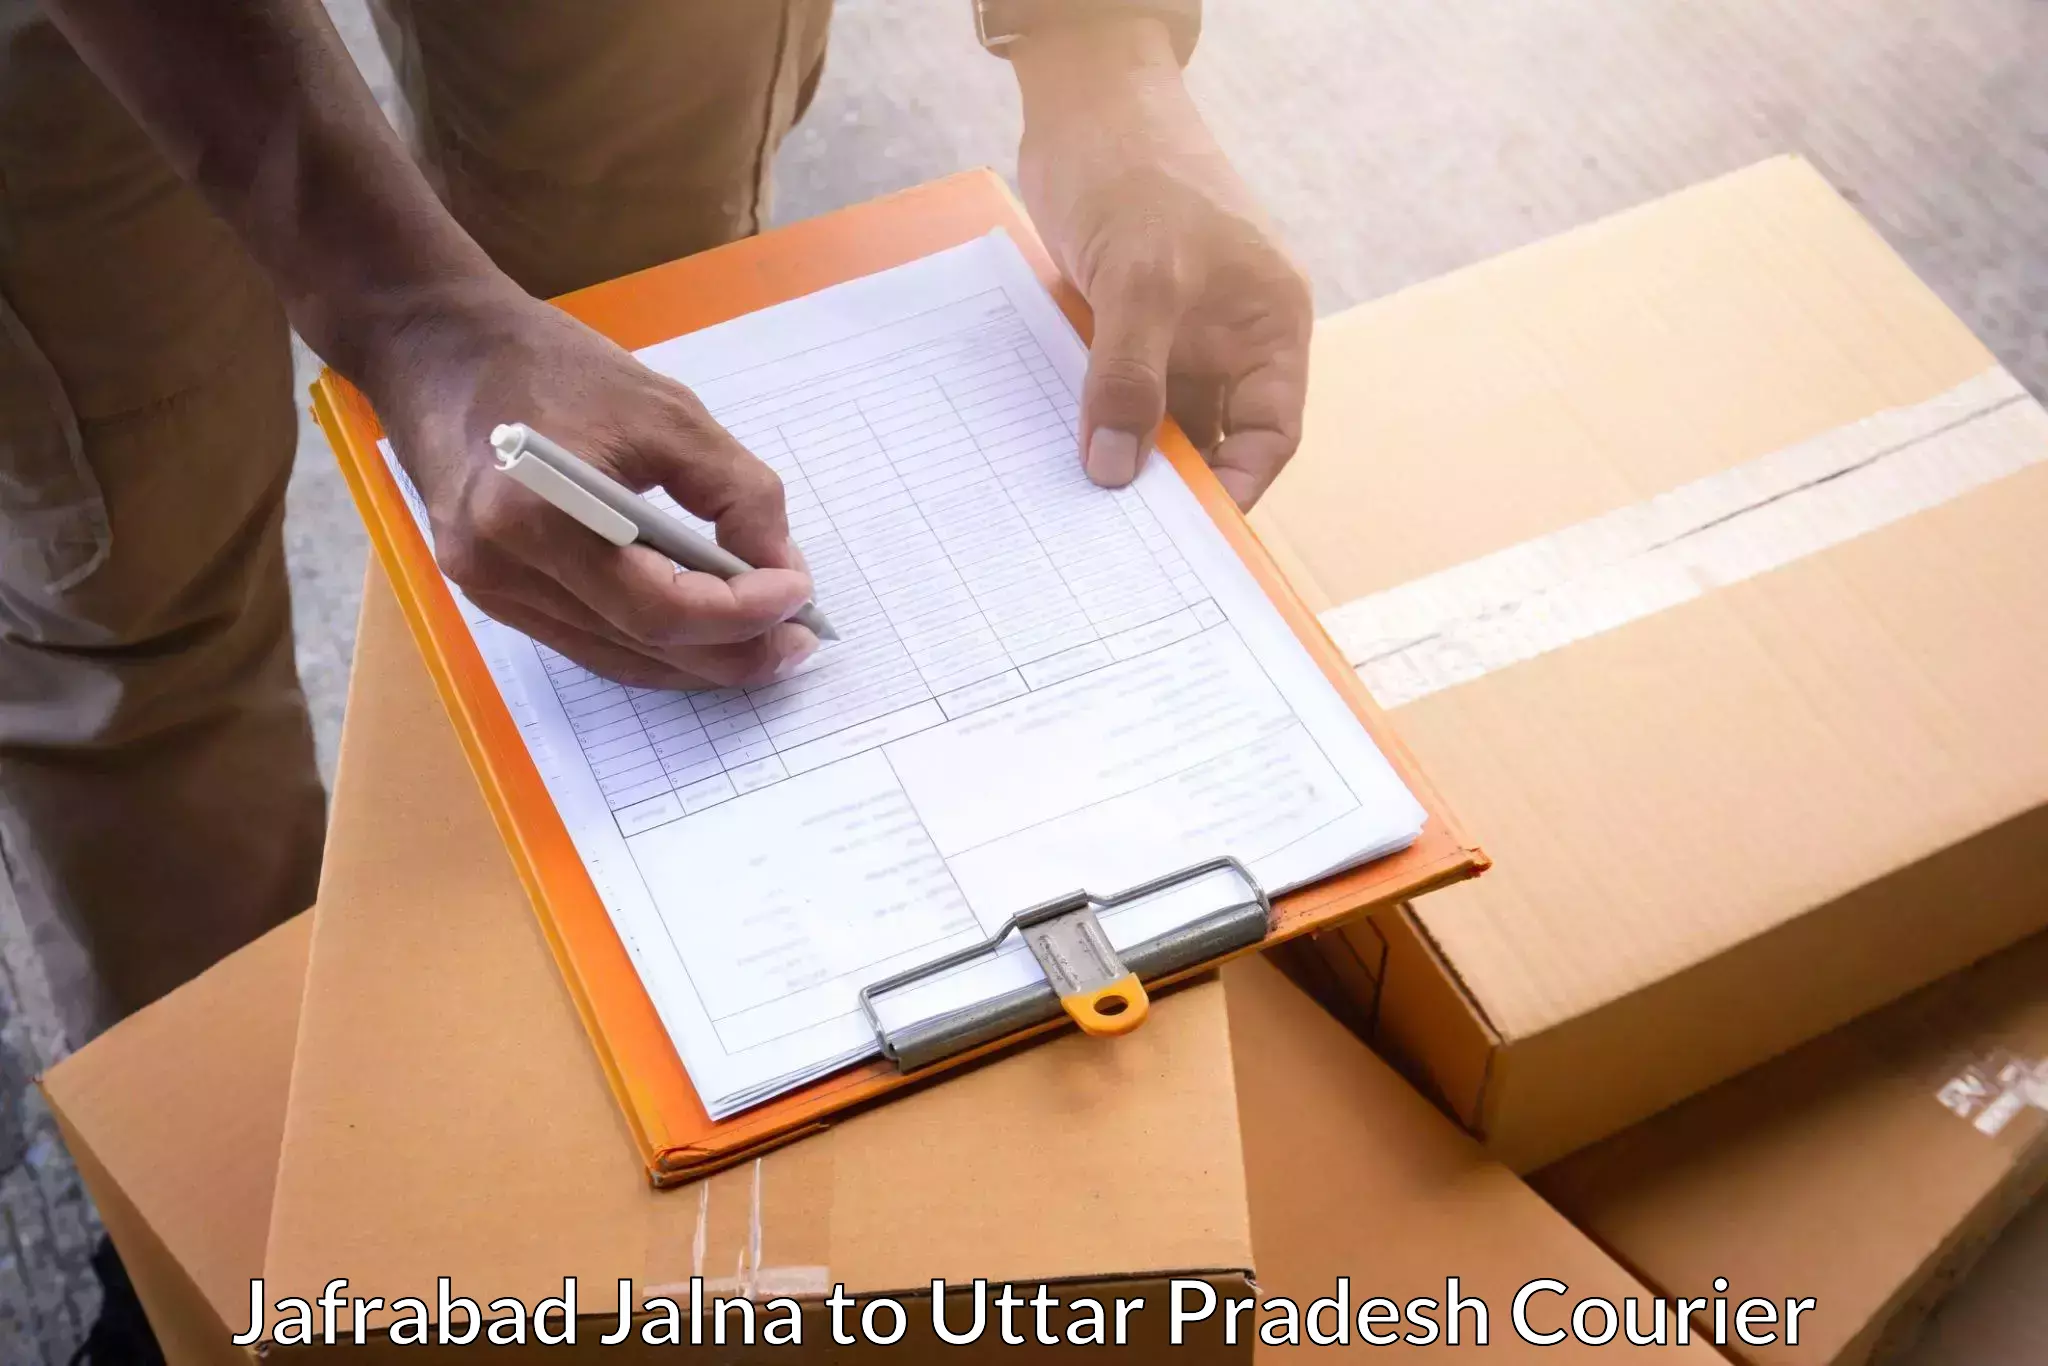 Global delivery options Jafrabad Jalna to Salempur